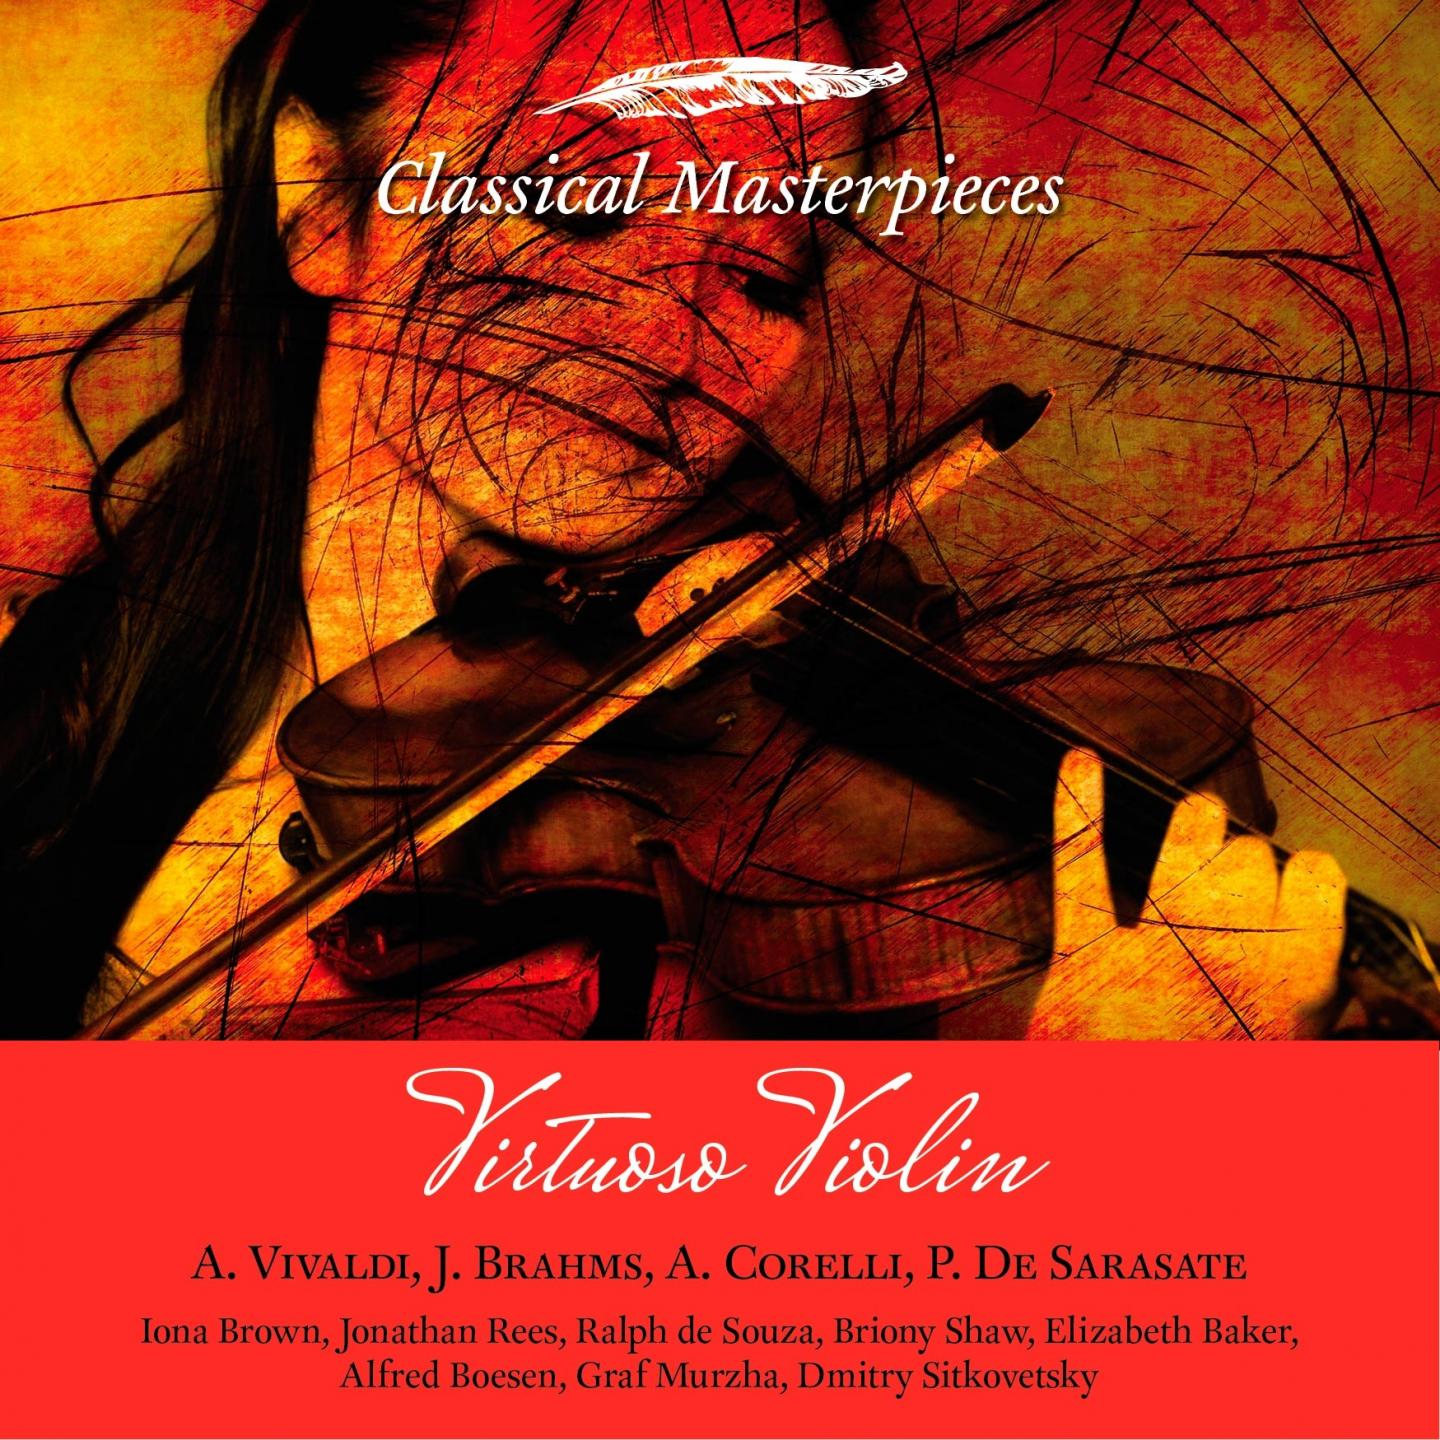 Concerto for Violin and Orchestra, Op. 64 in E Minor: III Allegretto non troppo, Allegro molto vivace